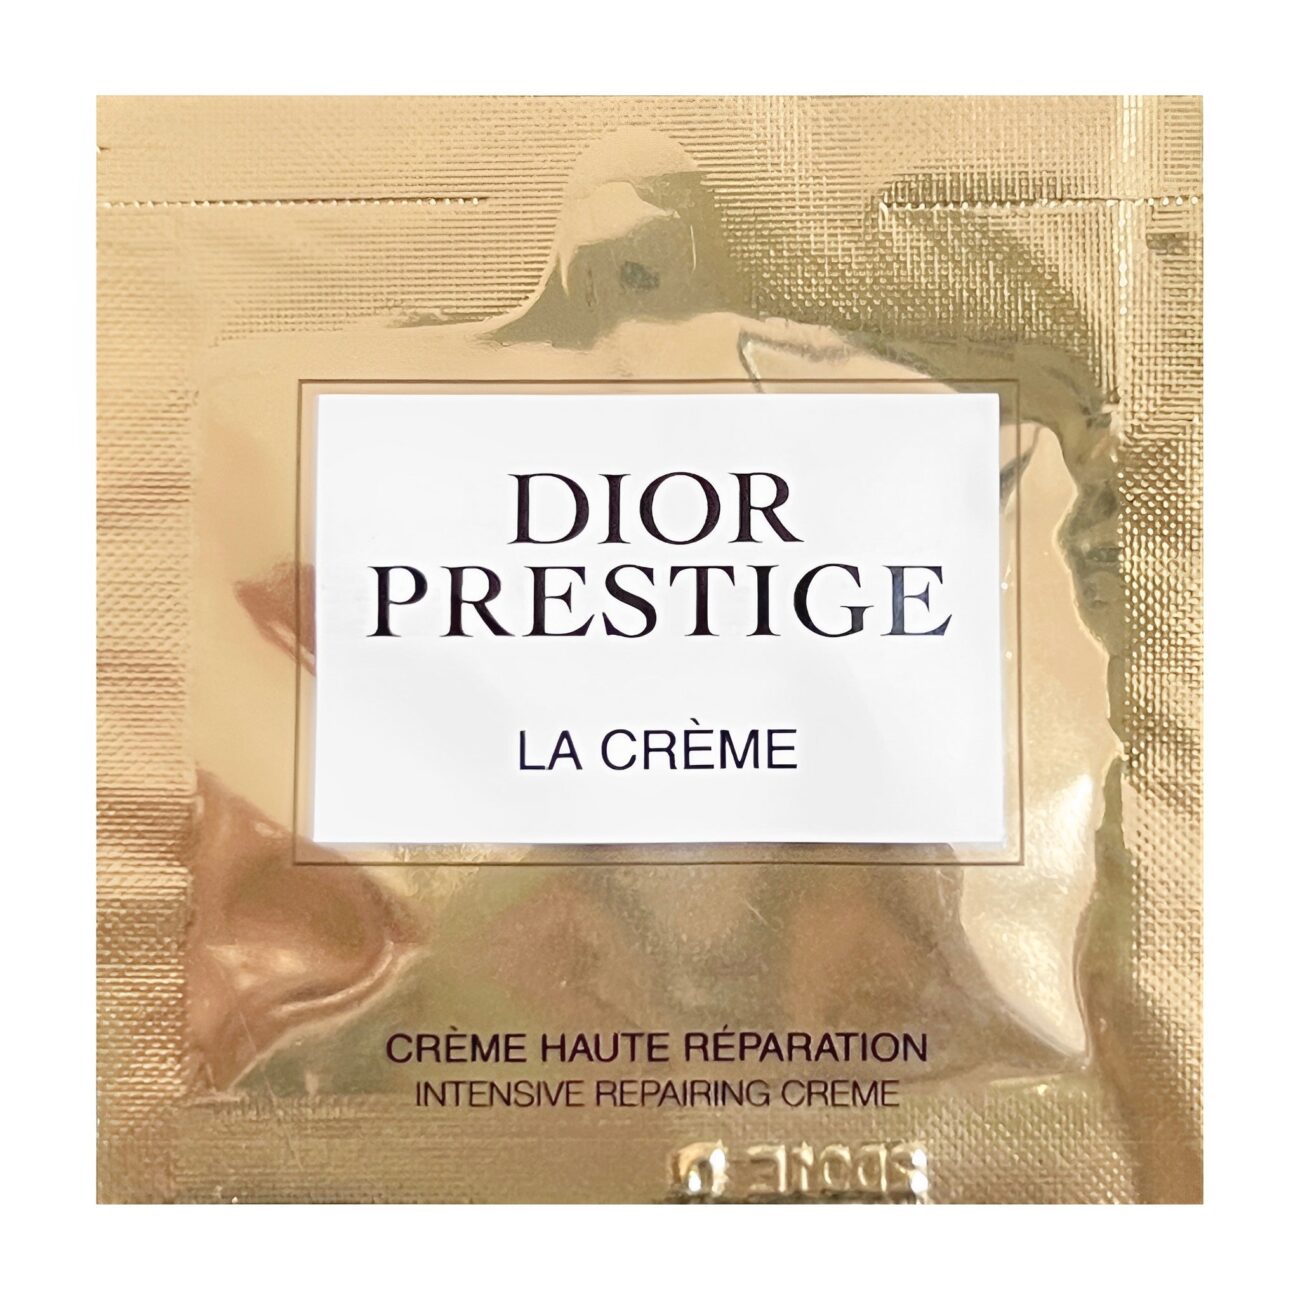 Prestige La Creme Texture Essentielle Sample-DIOR